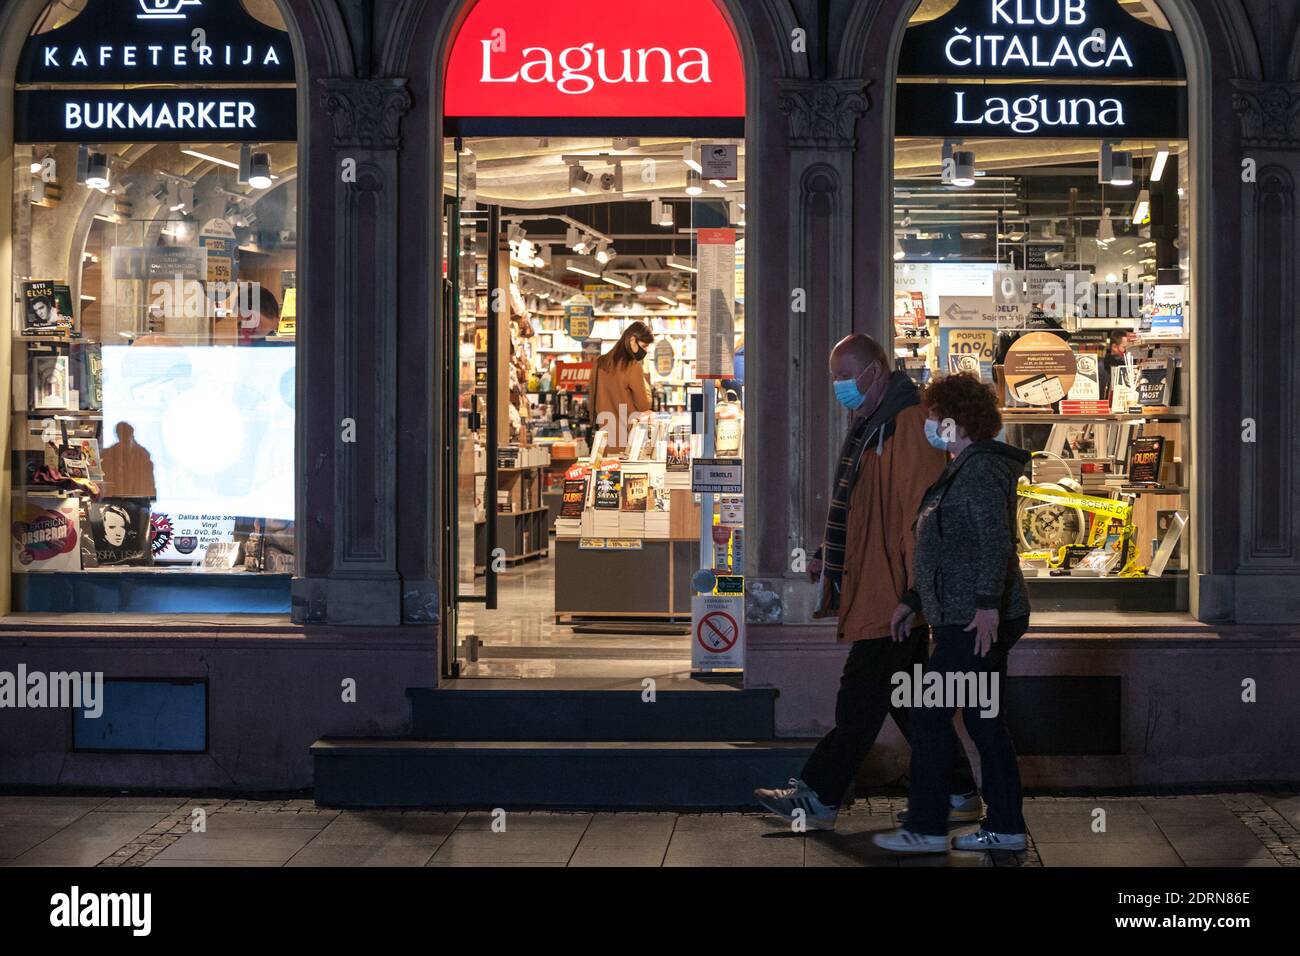 BELGRAD, SERBIEN - 21. OKTOBER 2020: Altes Seniorenpaar, das vor einer Buchhandlung vorbeikommt, wobei Kunden Bücher auswählen, die eine Atemmaske tragen Stockfoto